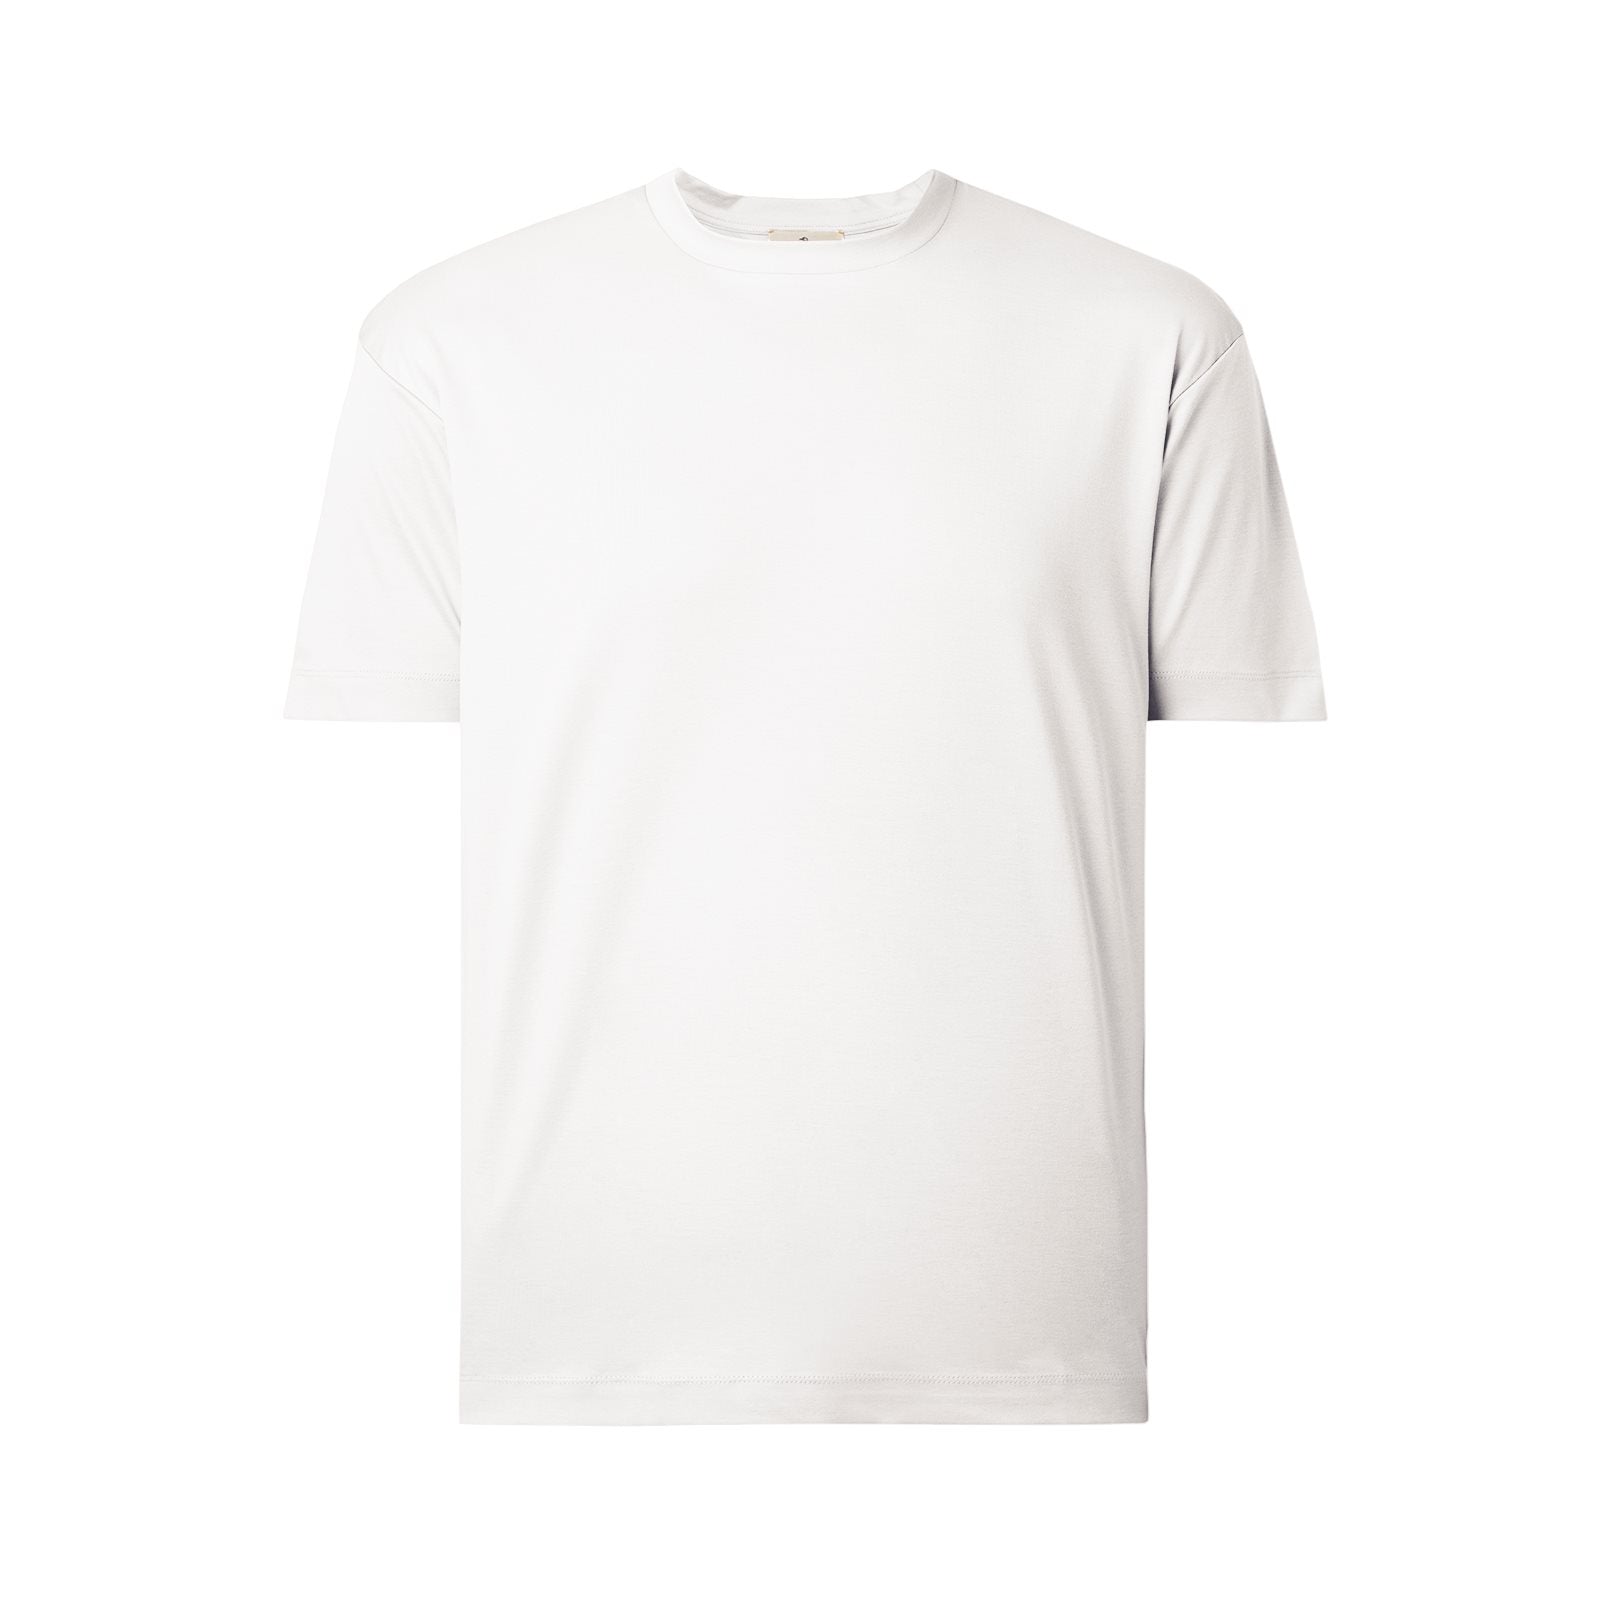 Interlock supima t-shirt